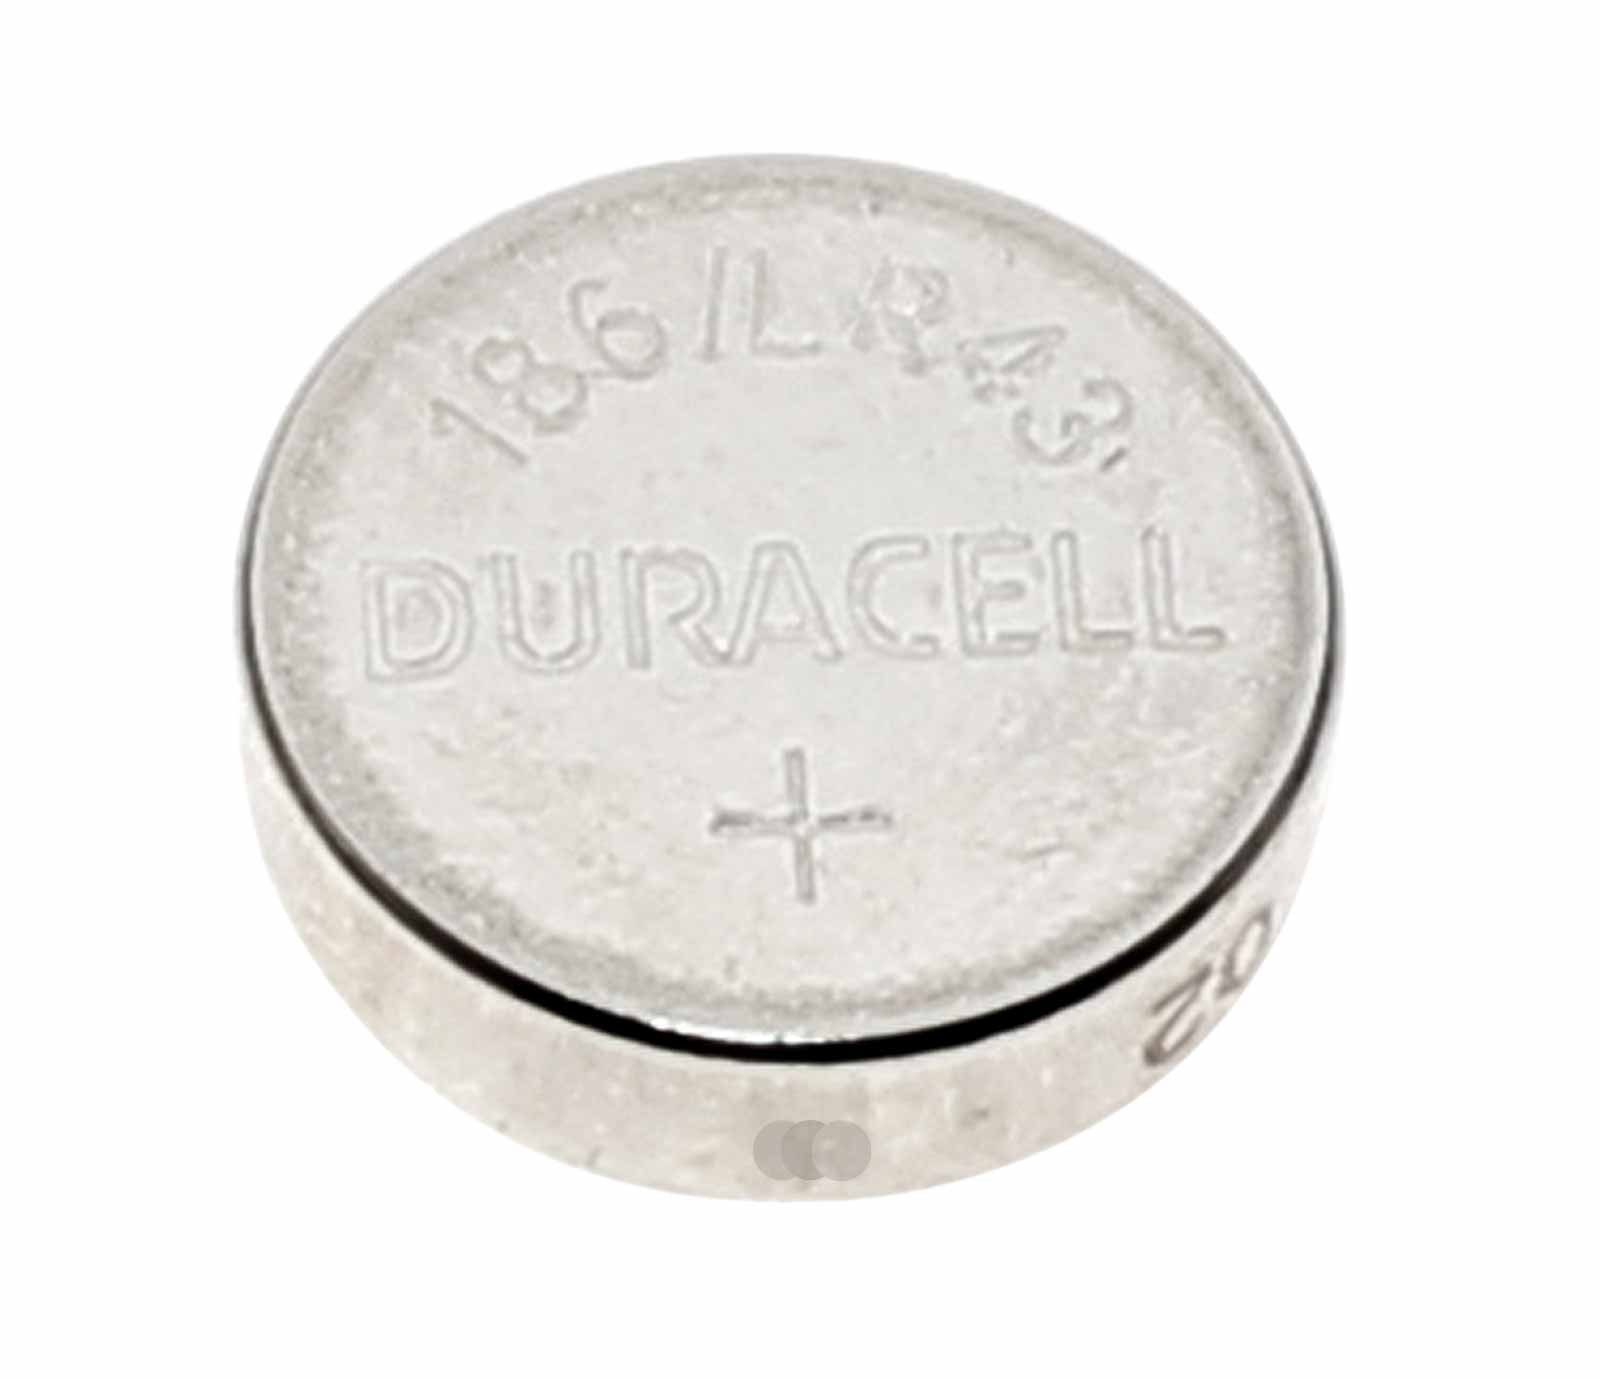 Duracell LR43 AG12 Alkaline Knopfzelle Batterie, 12GA, B-LR43, G12A, 1,5V, 73mAh